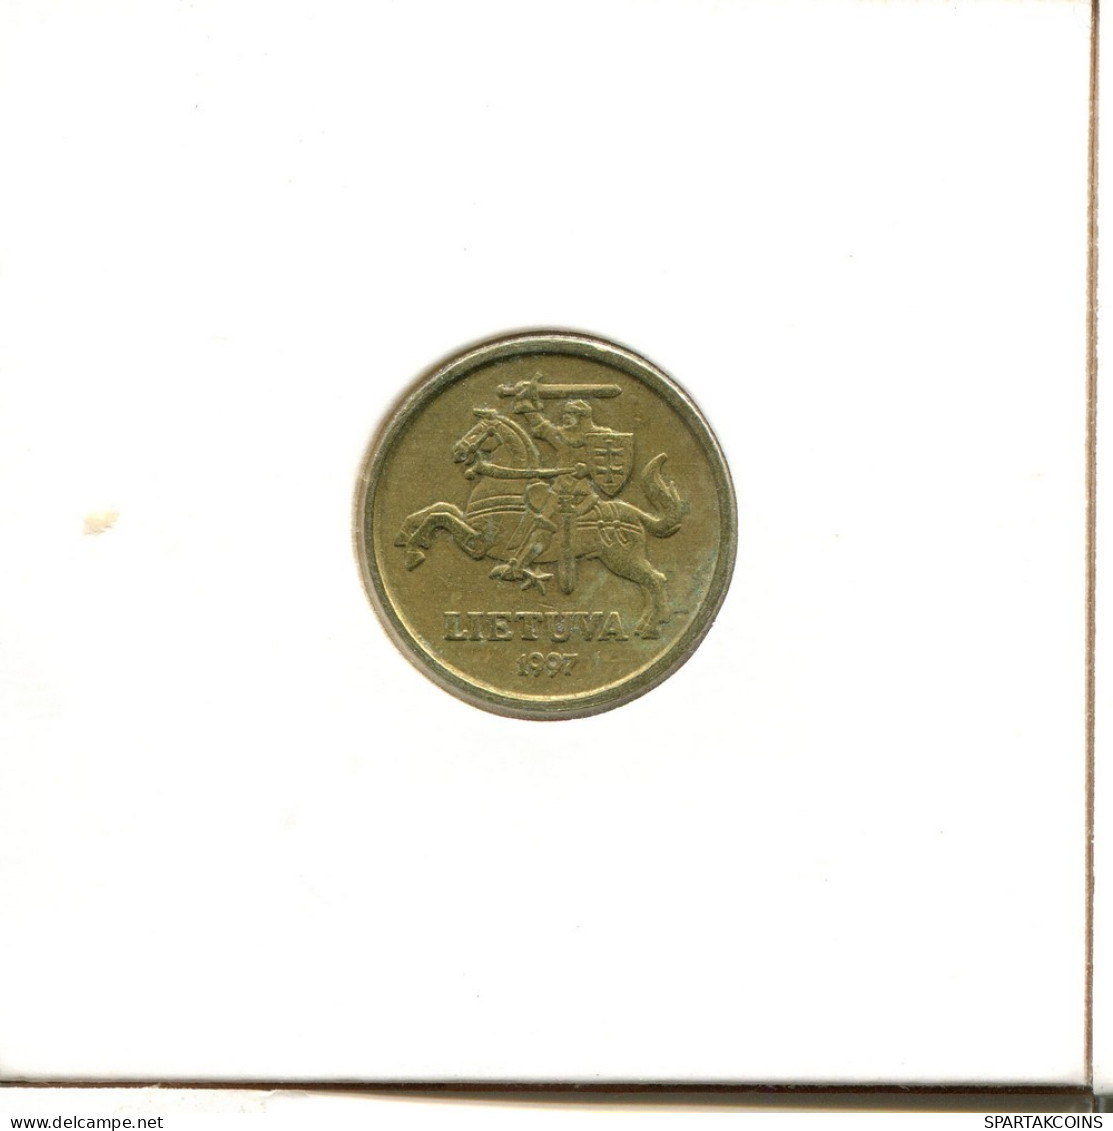 10 CENTU 1997 LITHUANIA Coin #AS702.U.A - Lithuania